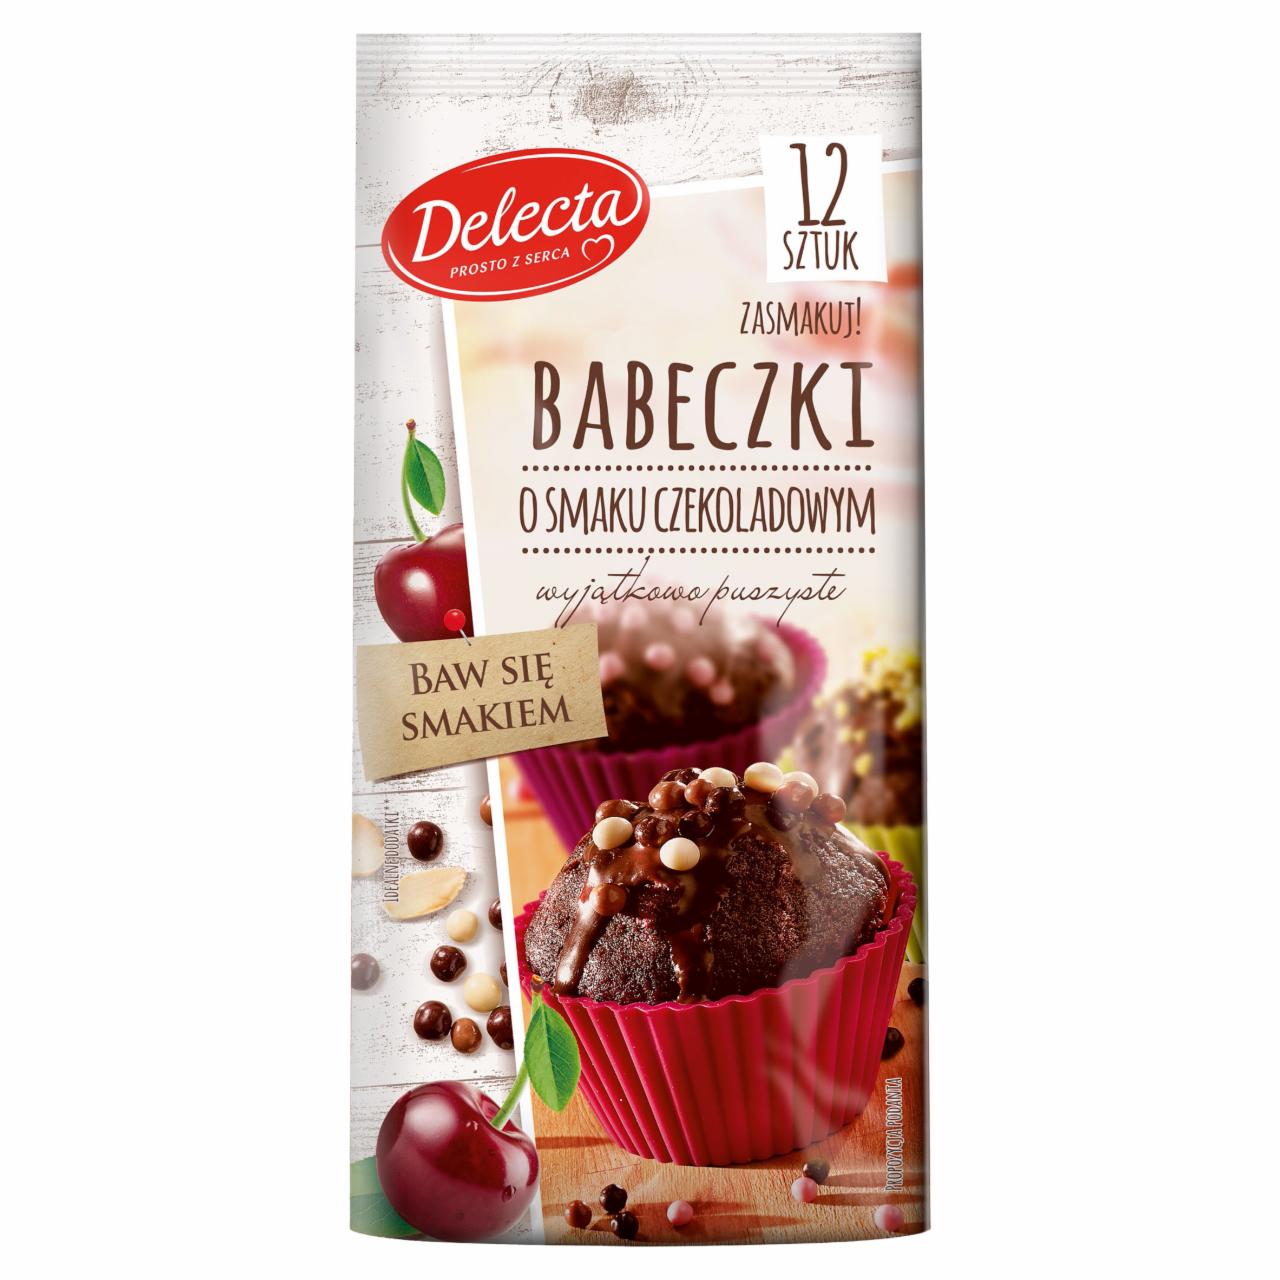 Zdjęcia - Delecta Babeczki o smaku czekoladowym 265 g